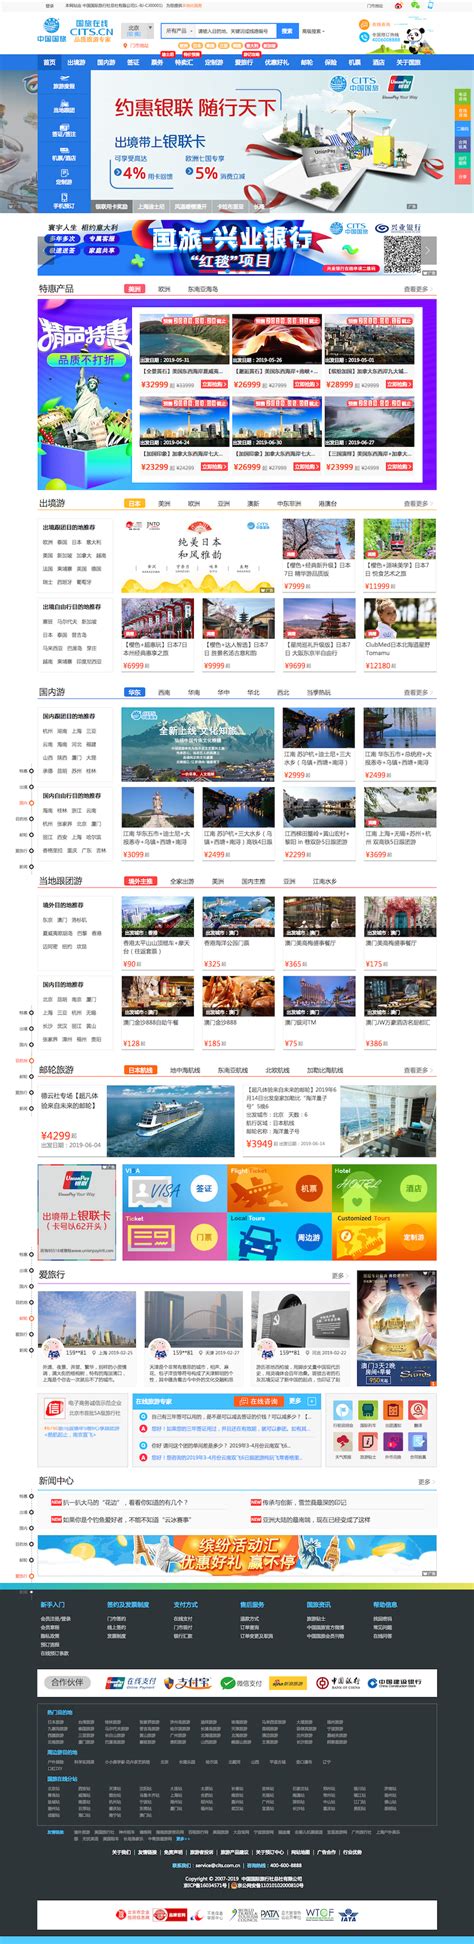 北京网站建设公司分享响应式设计的五个好处